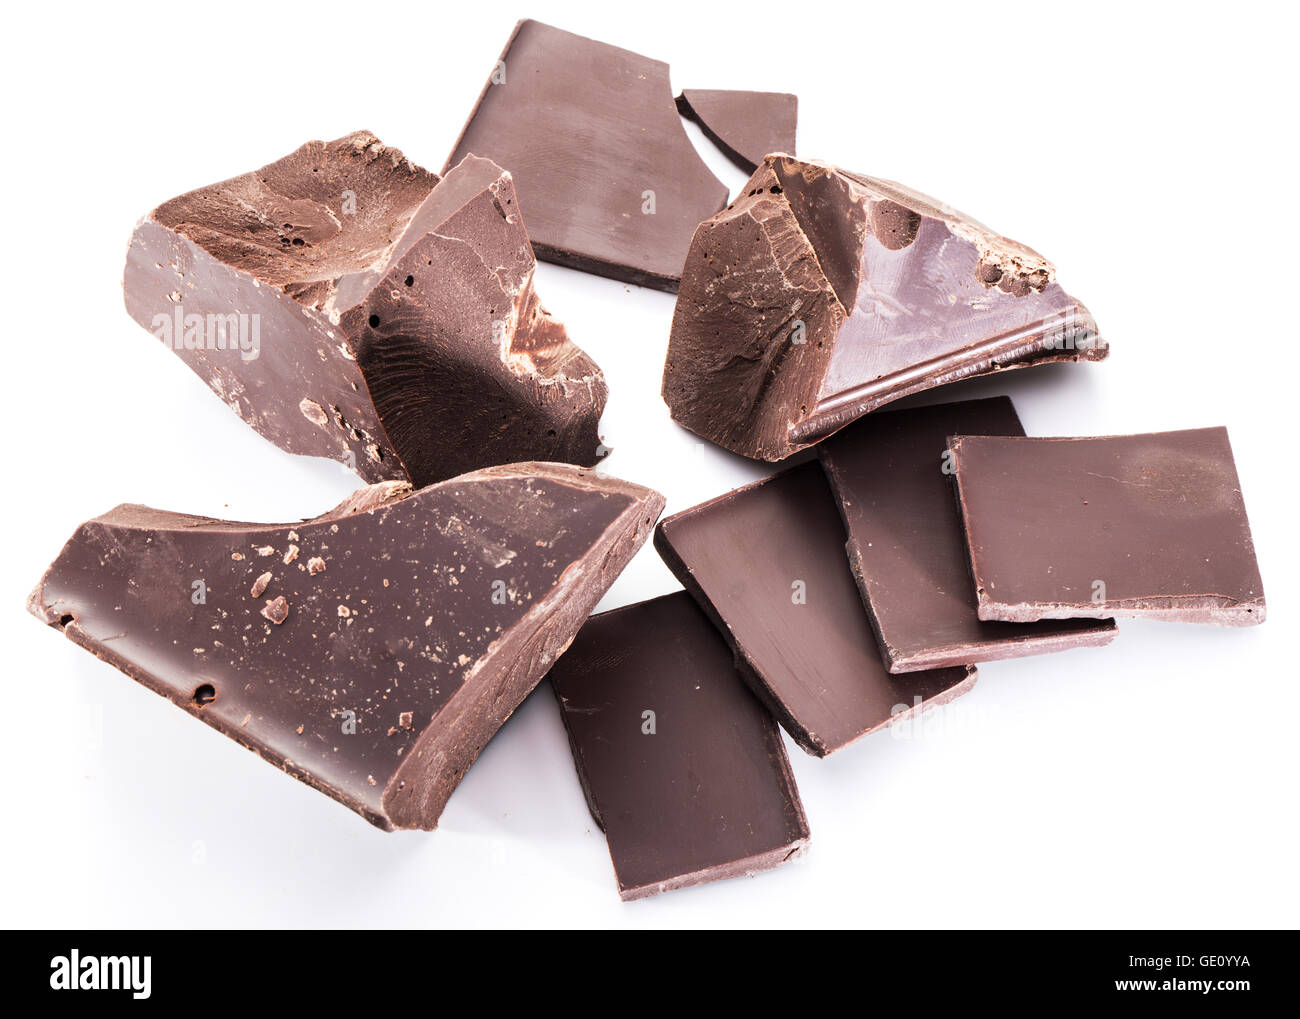 Schokolade Bausteine und Stücke von Schokolade auf einem weißen Hintergrund. Stockfoto